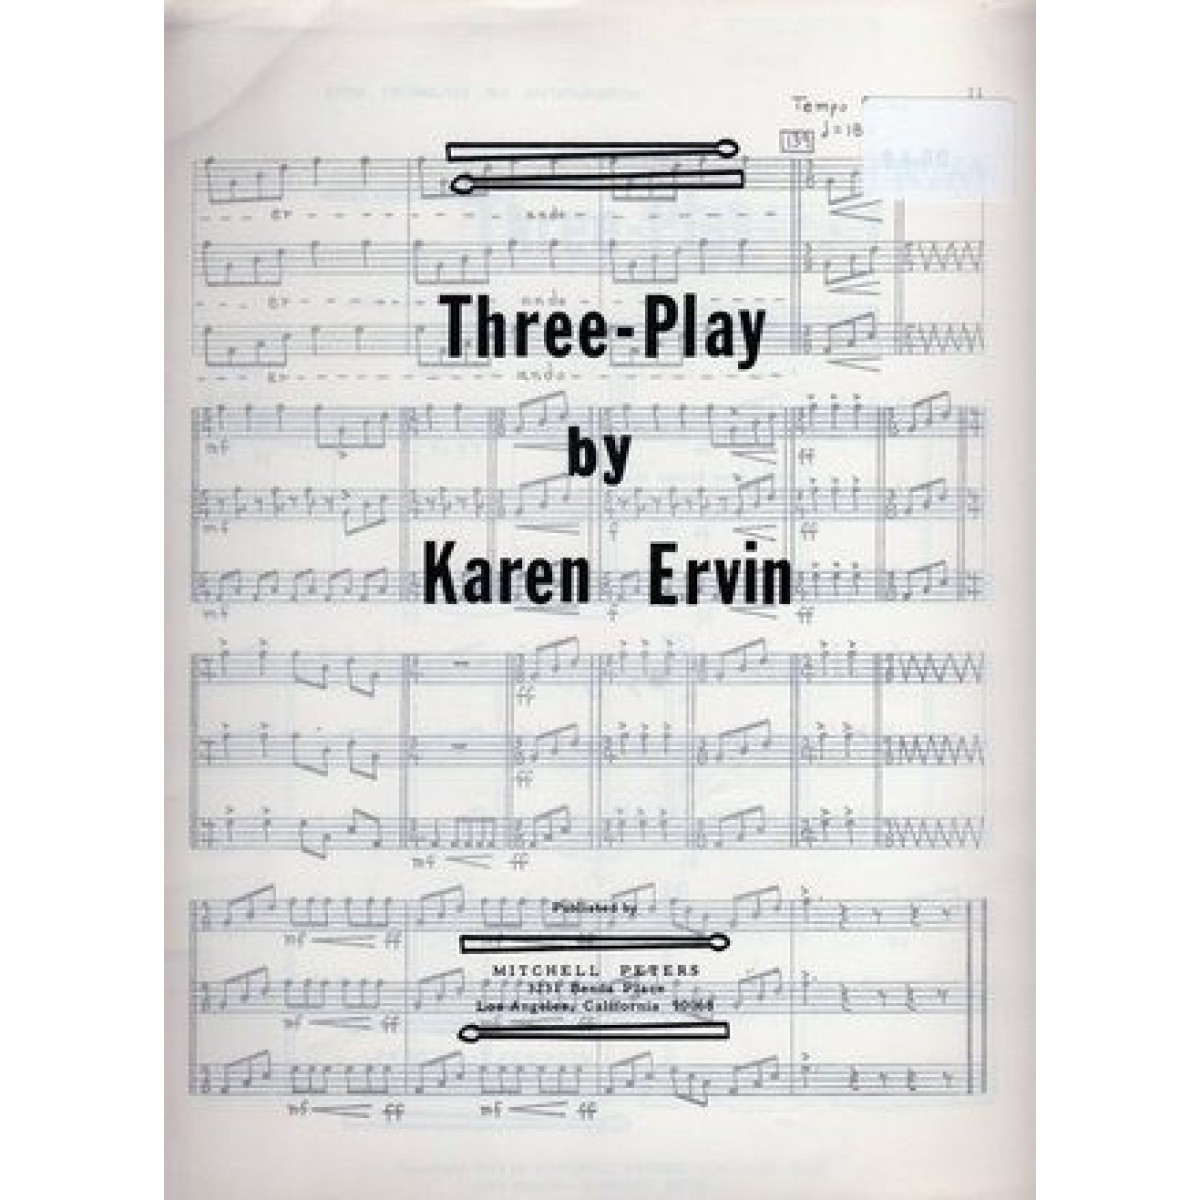 Three-Play by Karen Ervin